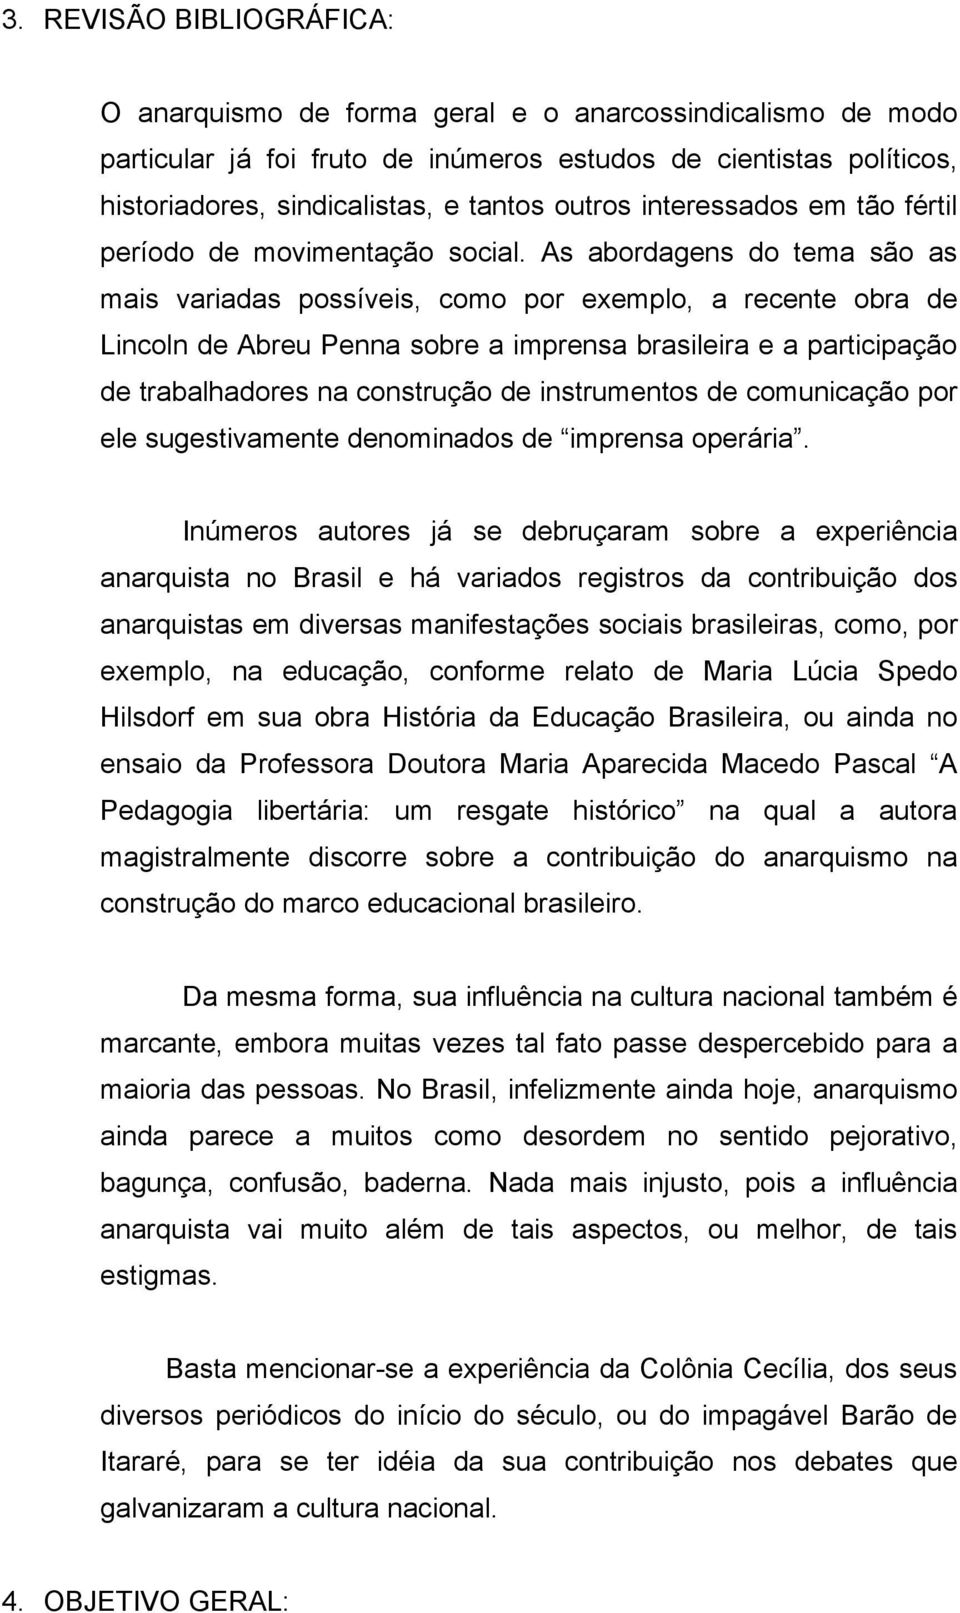 As abordagens do tema são as mais variadas possíveis, como por exemplo, a recente obra de Lincoln de Abreu Penna sobre a imprensa brasileira e a participação de trabalhadores na construção de